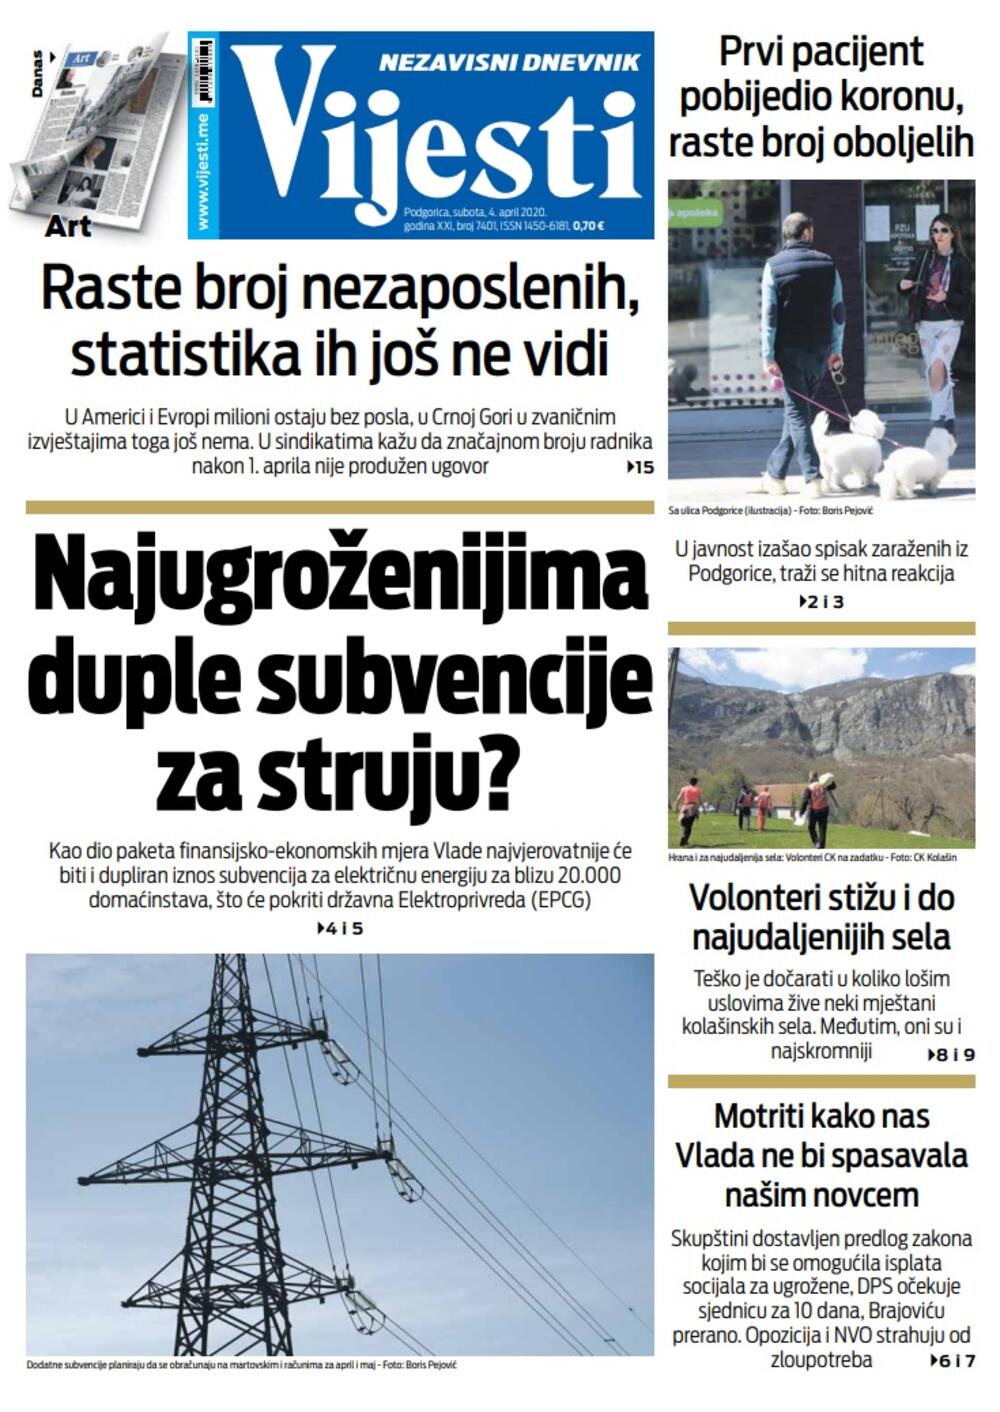 Naslovna strana "Vijesti" za 4. april 2020., Foto: Vijesti